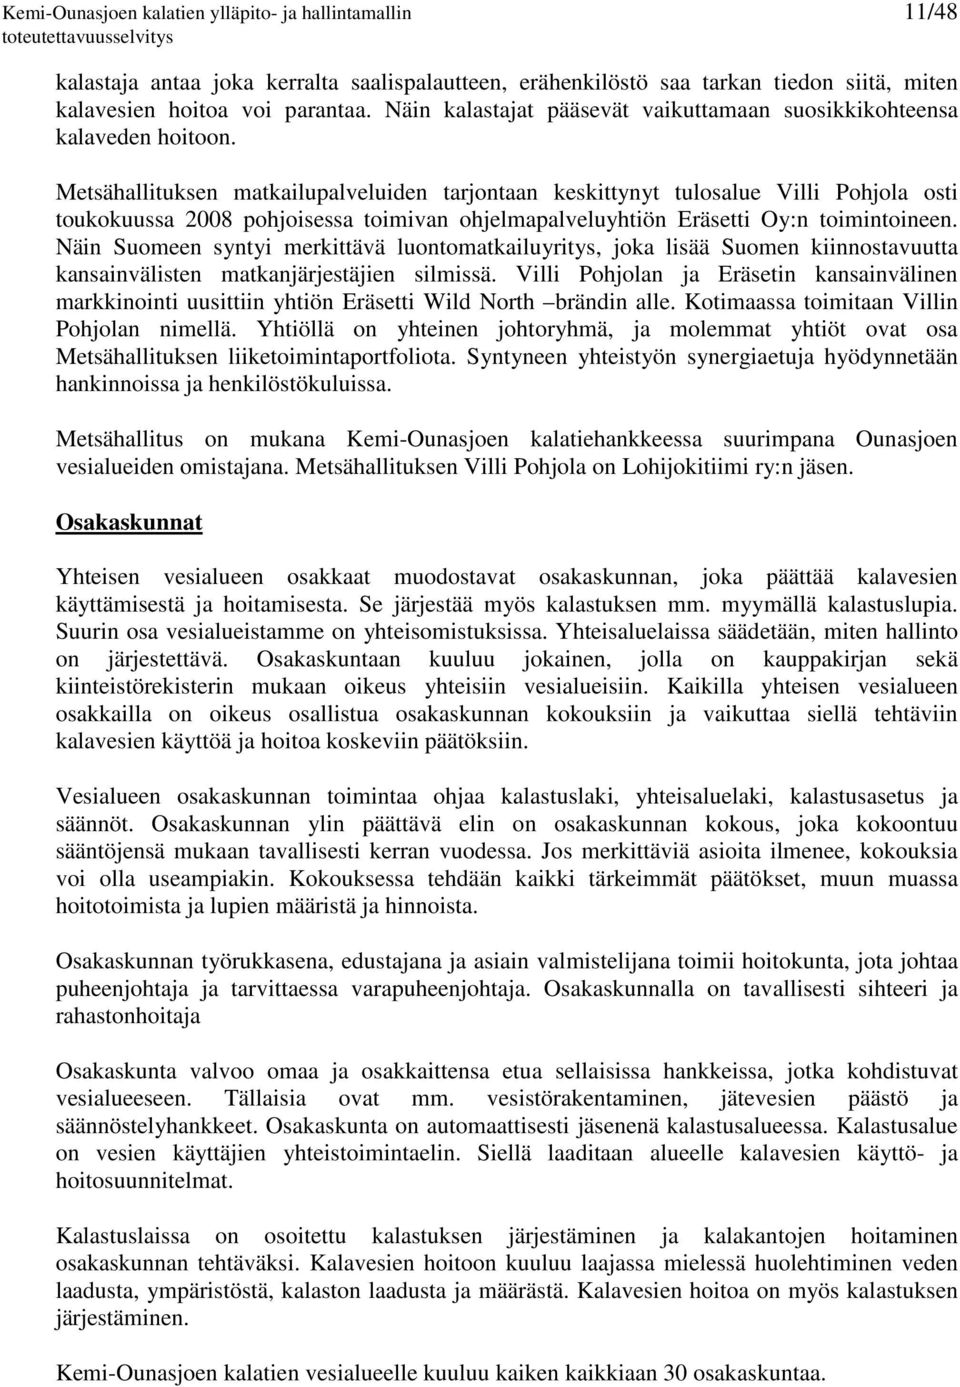 Metsähallituksen matkailupalveluiden tarjontaan keskittynyt tulosalue Villi Pohjola osti toukokuussa 2008 pohjoisessa toimivan ohjelmapalveluyhtiön Eräsetti Oy:n toimintoineen.